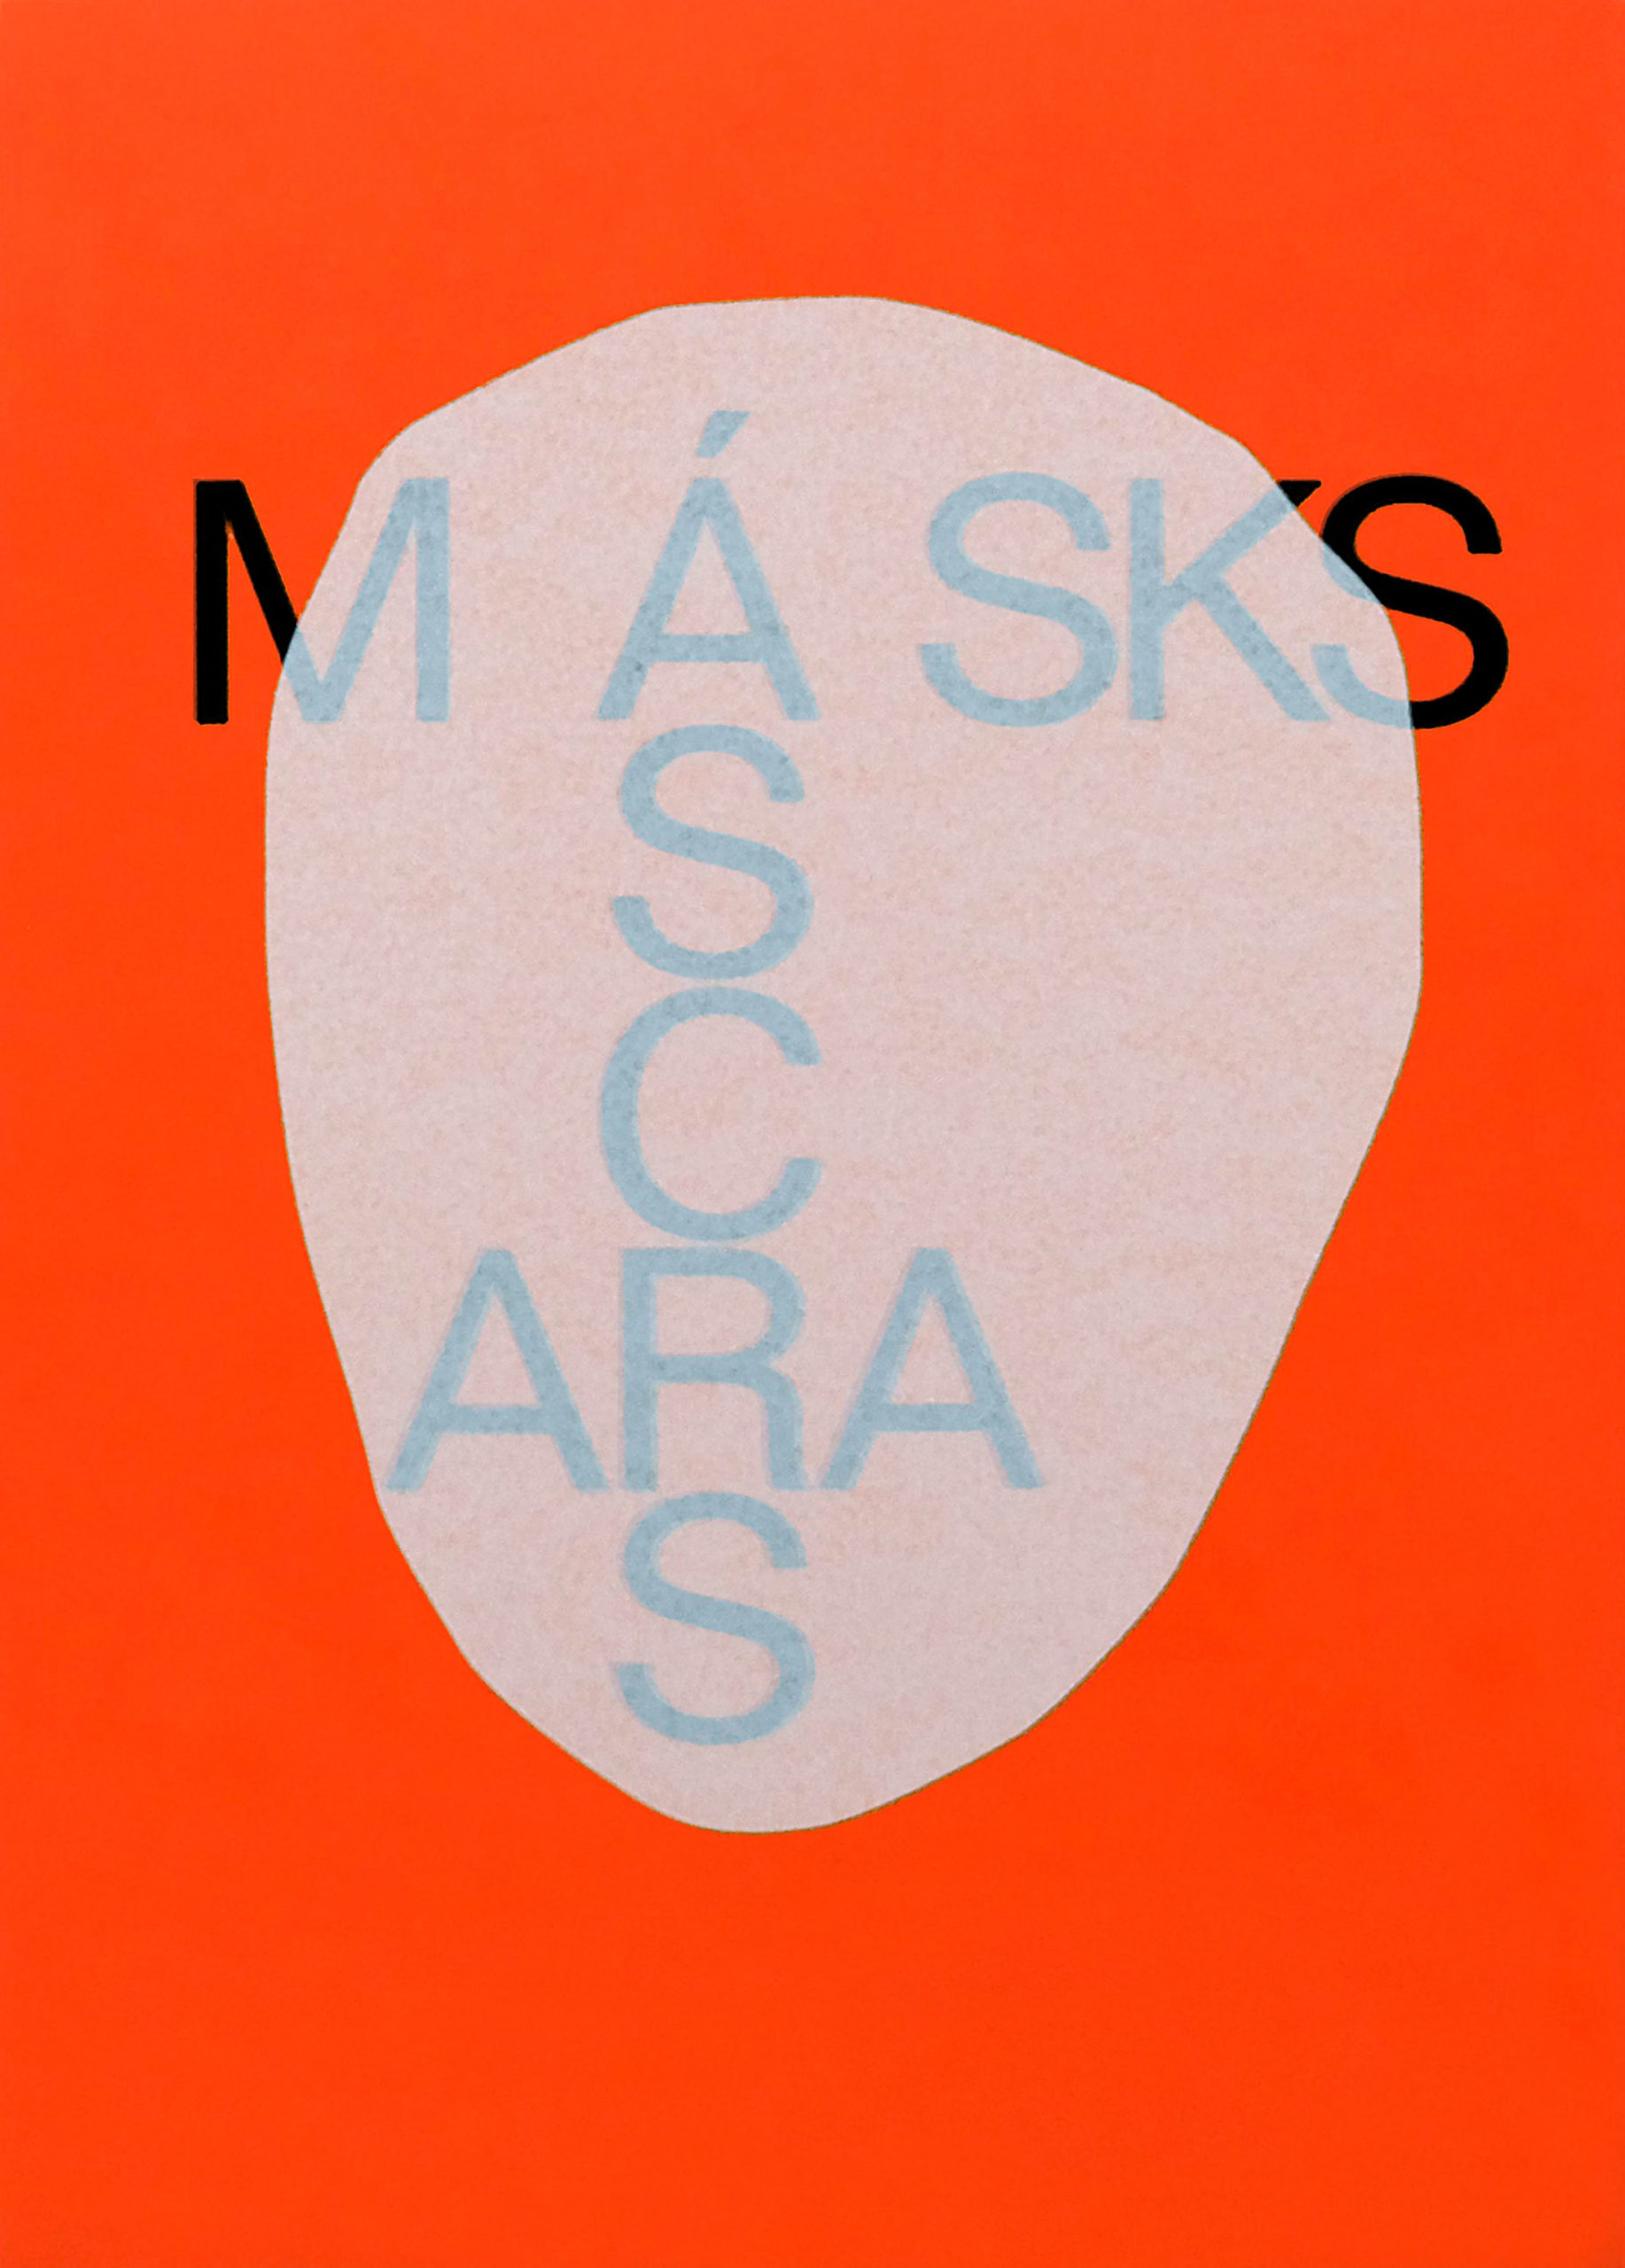 Máscaras (Masks), Galeria Municipal do Porto, exhibition catalogue